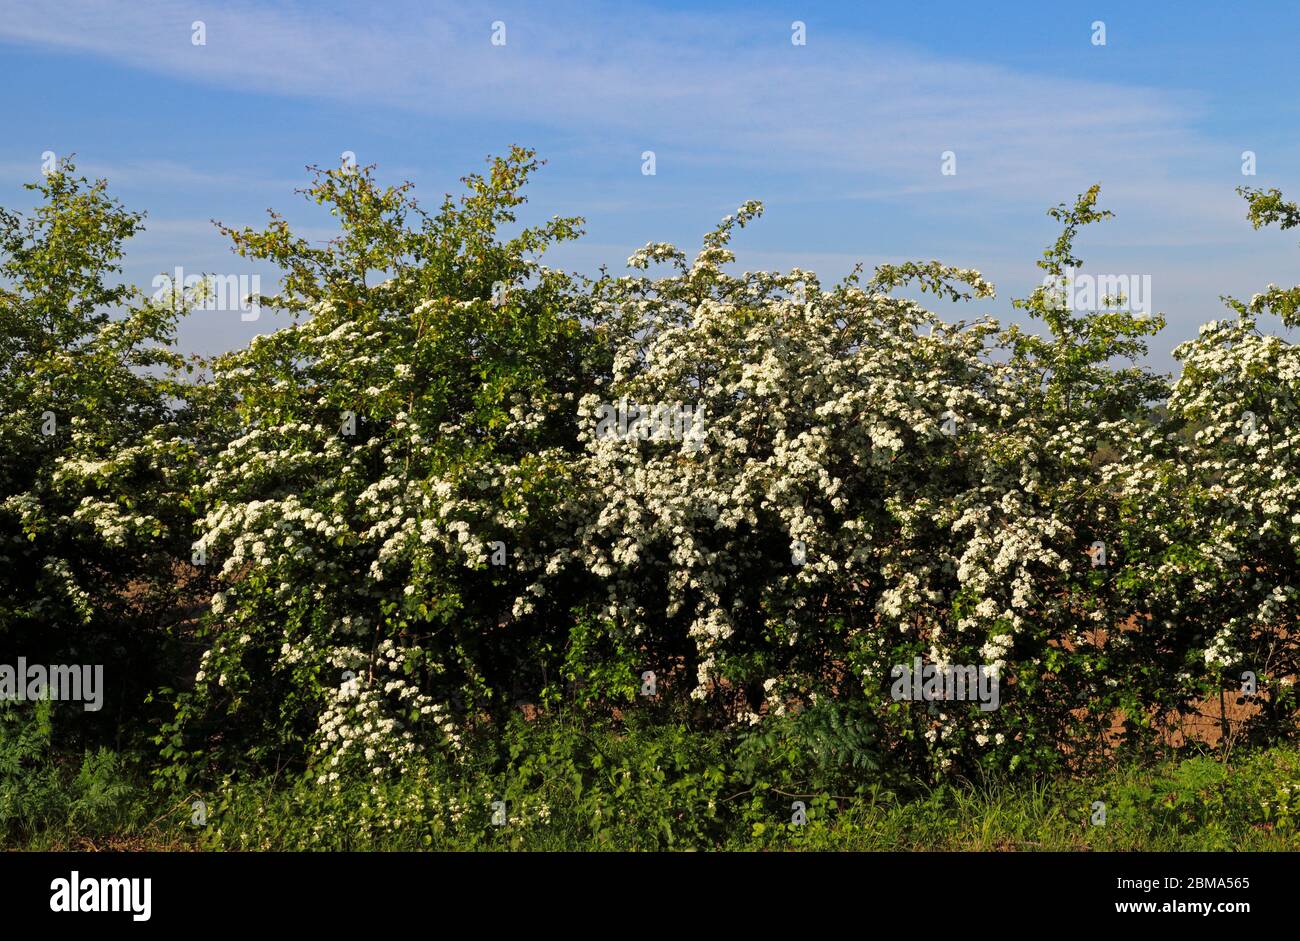 A Hawthorn, Crataegus monogyna, en fleur au printemps dans un hedgerow par la route A1067 à Hellesdon, Norfolk, Angleterre, Royaume-Uni, Europe. Banque D'Images